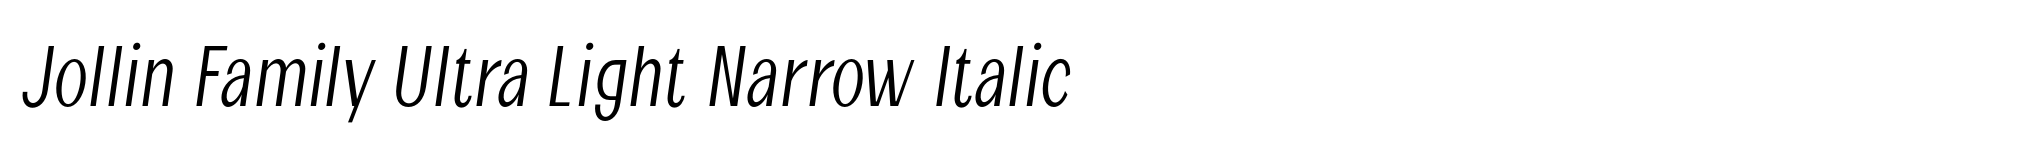 Jollin Family Ultra Light Narrow Italic image